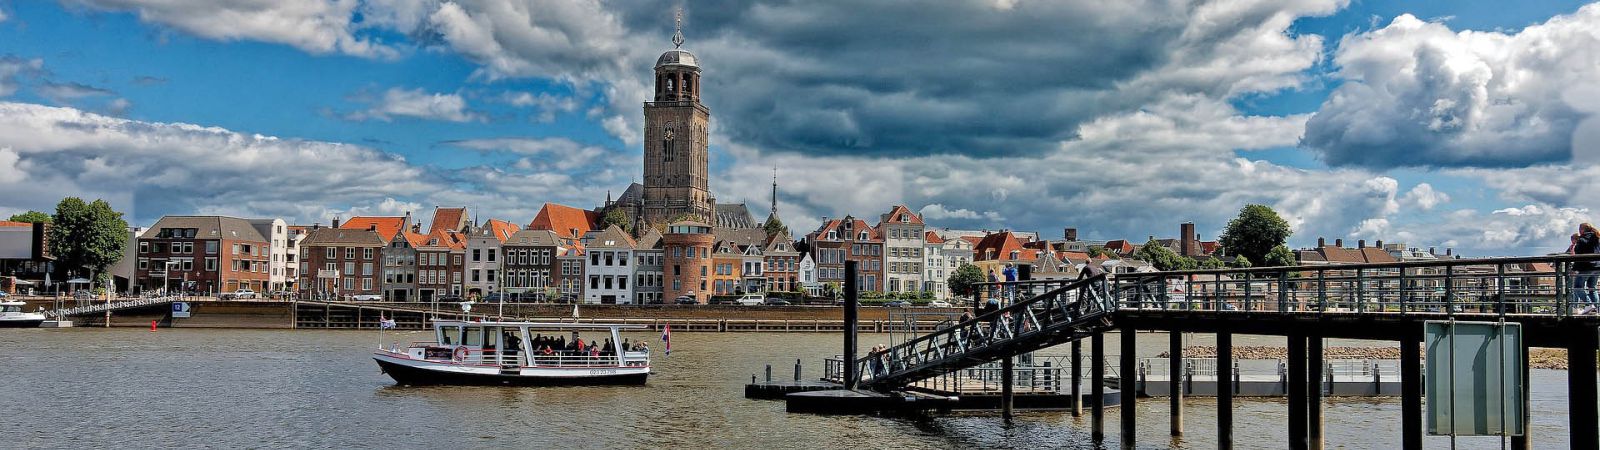 Deventer - hanzestad aan de IJssel